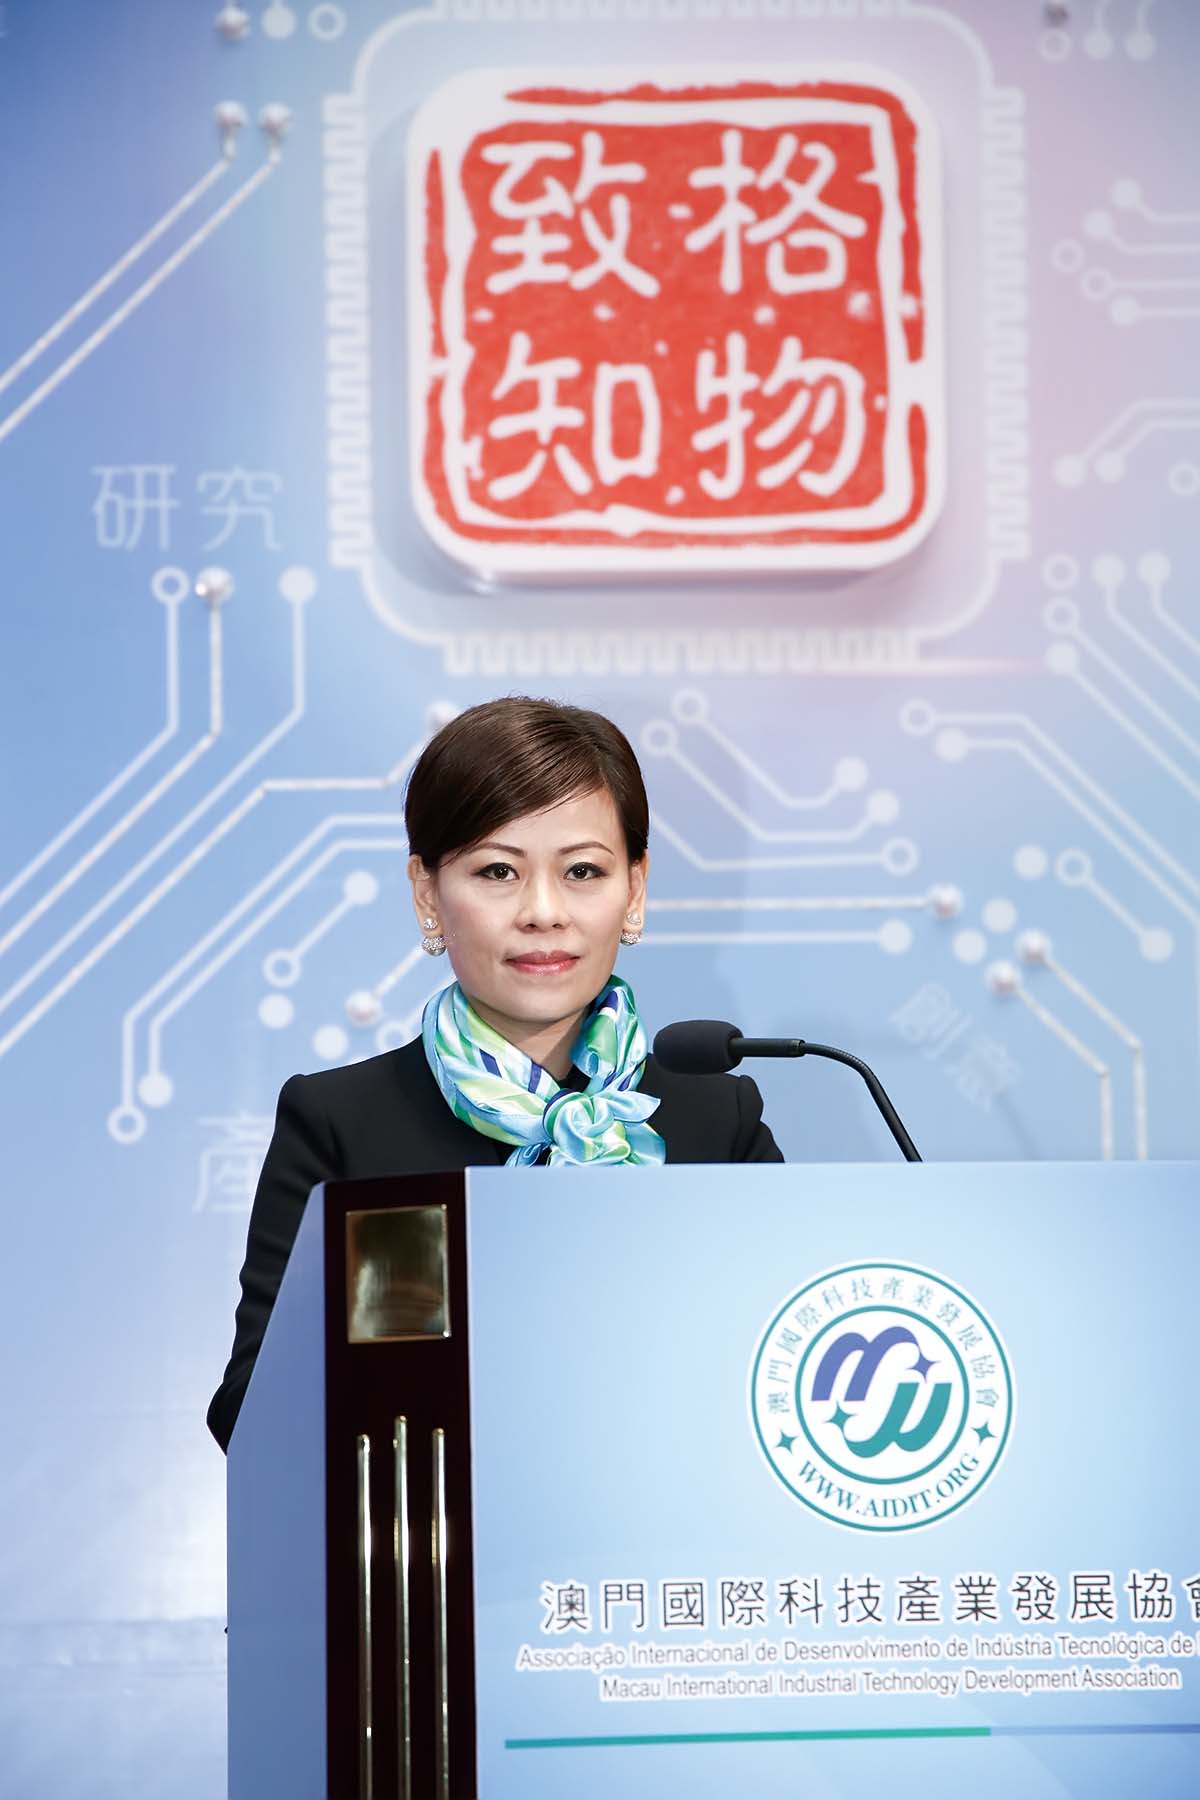 1澳门国际科技产业发展协会成立庆典时，李彩红女士担任创会会长並致辞.jpg